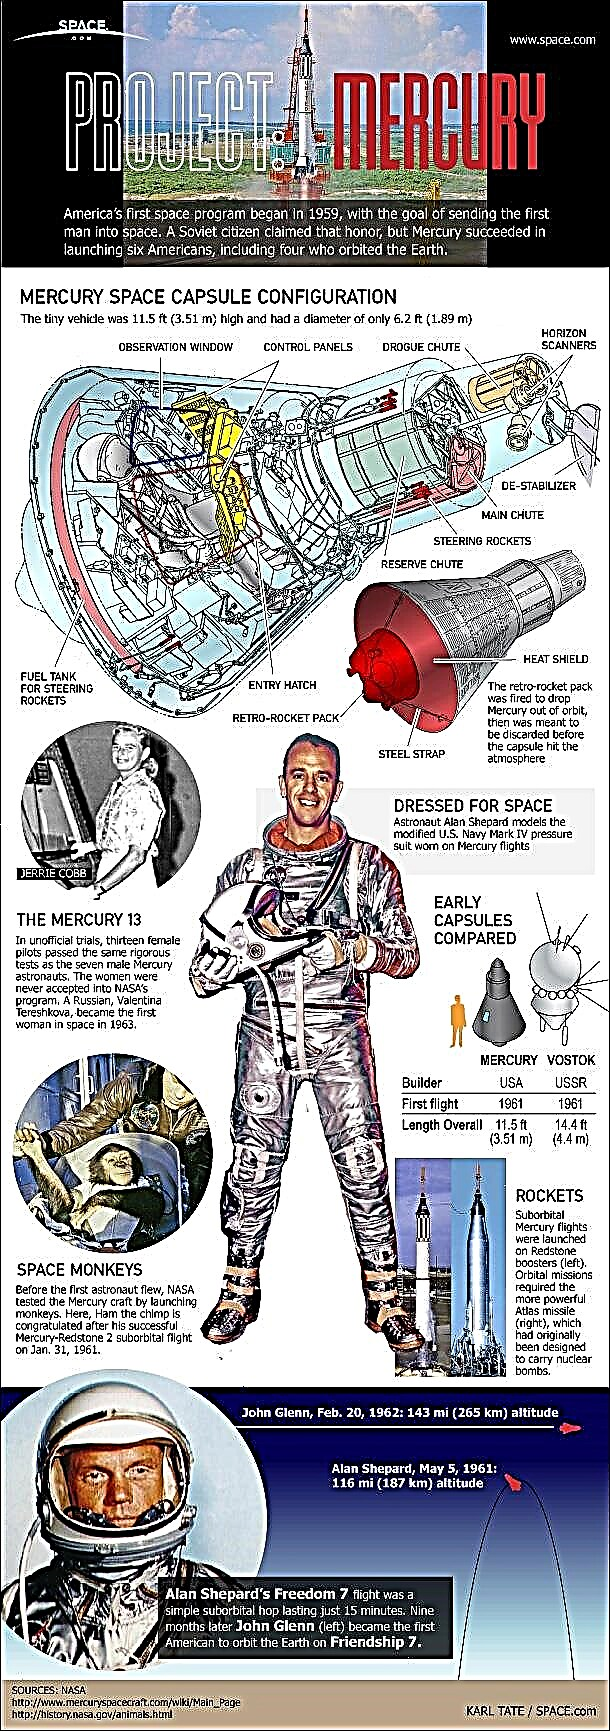 Project Mercury: 1er programme spatial habité des États-Unis